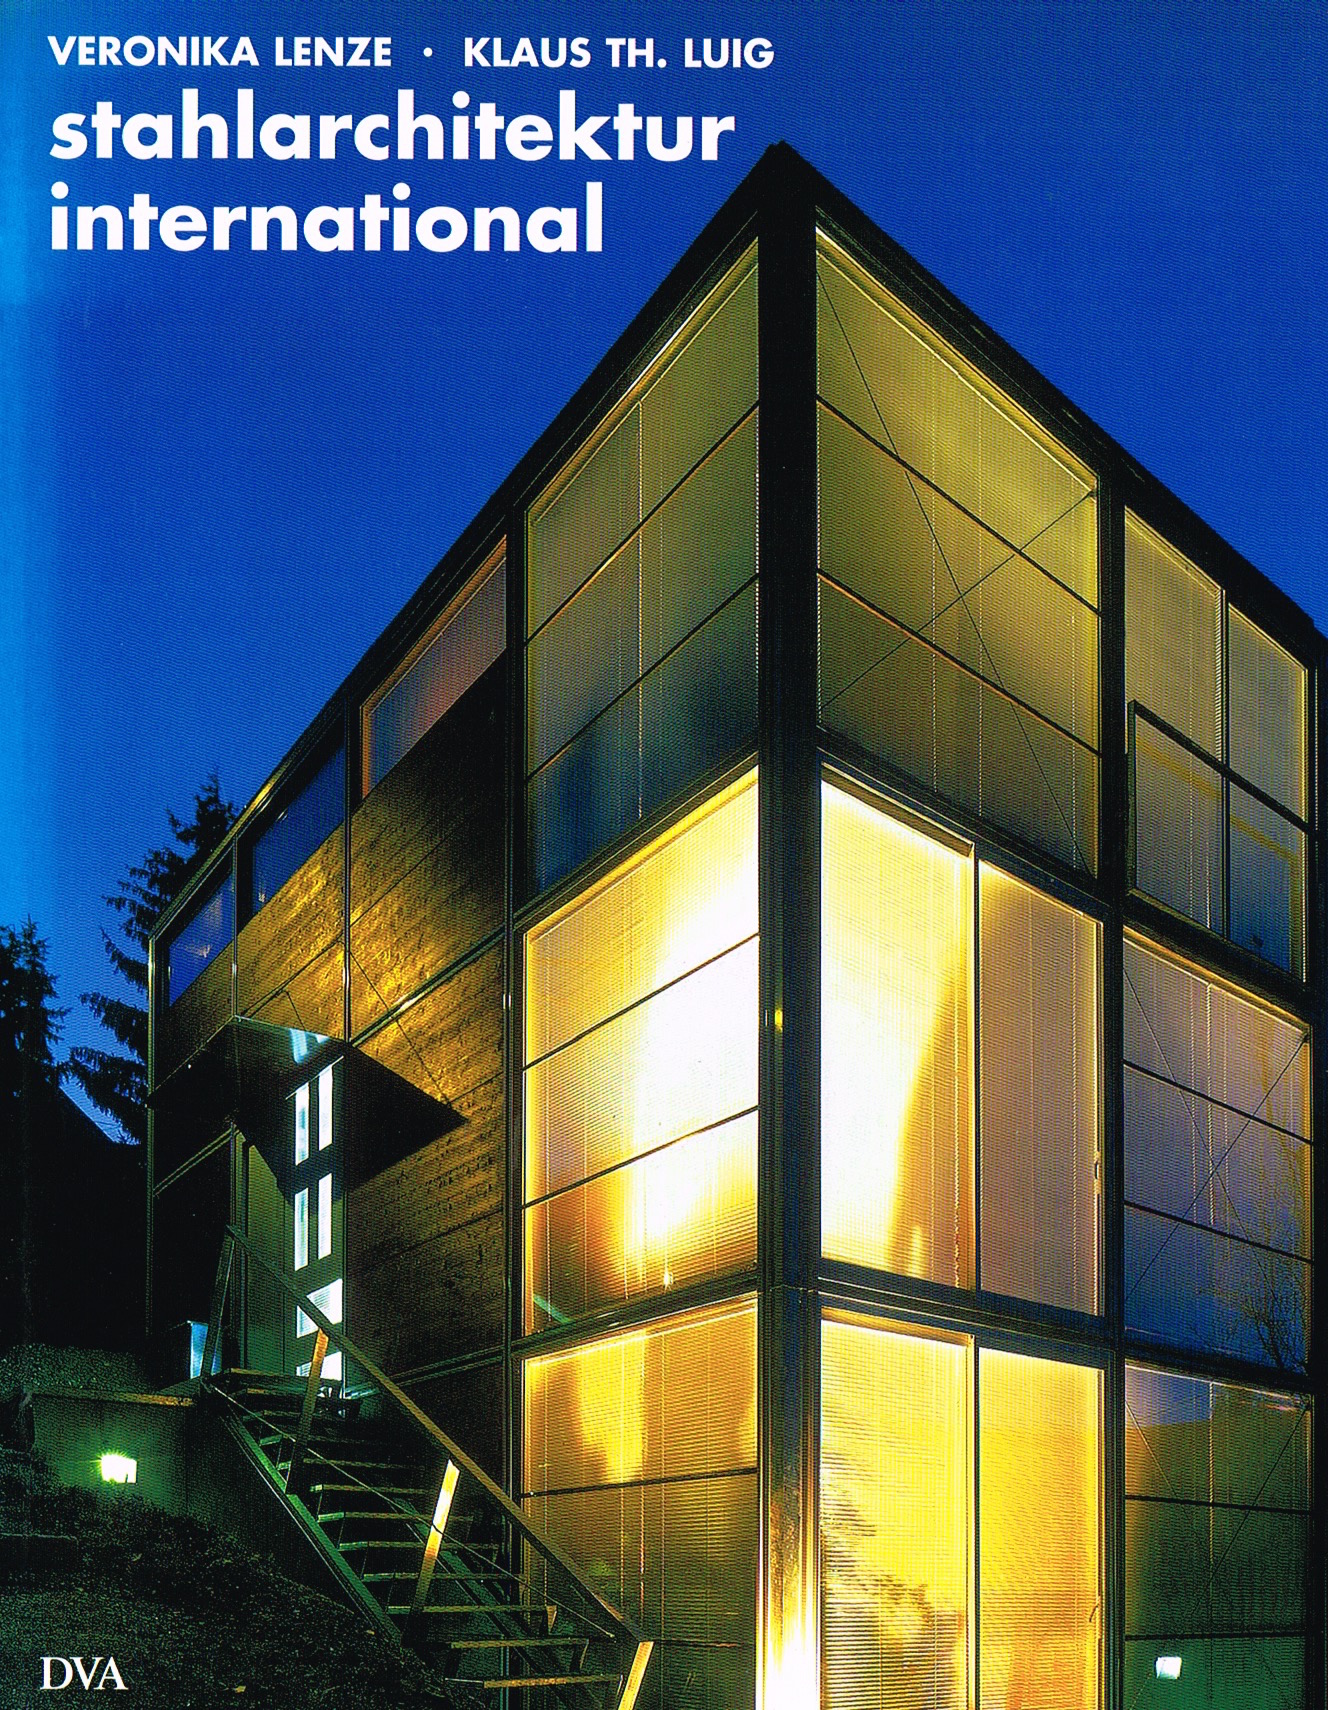 'Stahlarchitektur' : Deutsche Verlagsanstalt, Munich, 2004